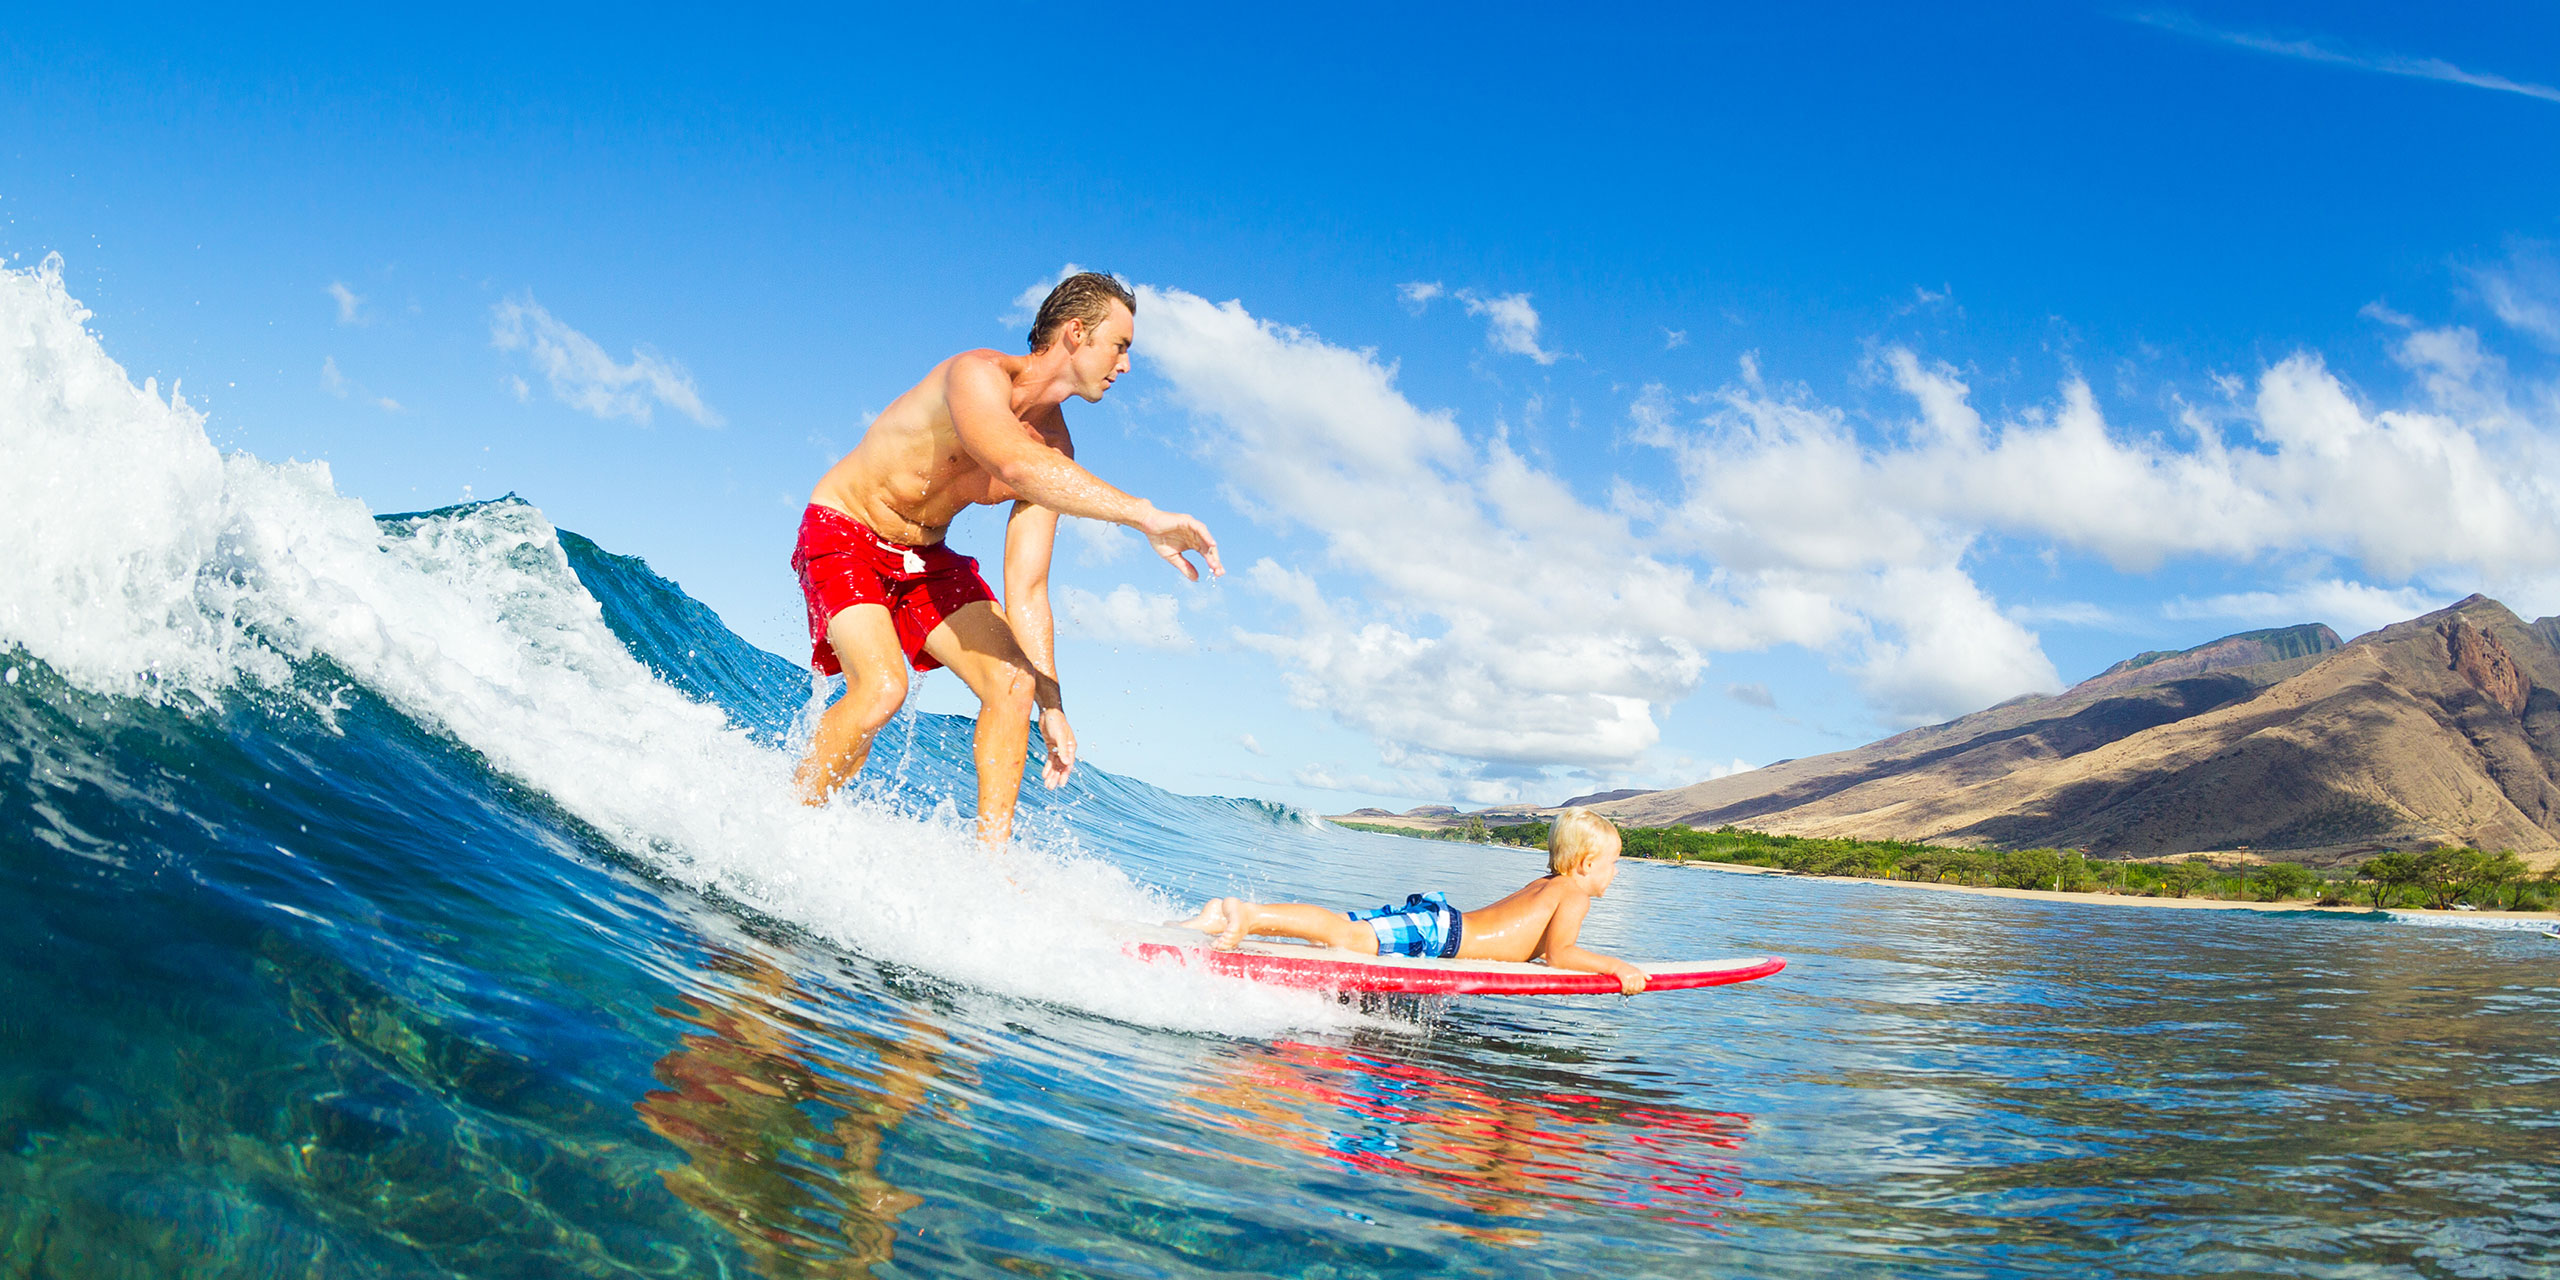 Hawaii kid surfing